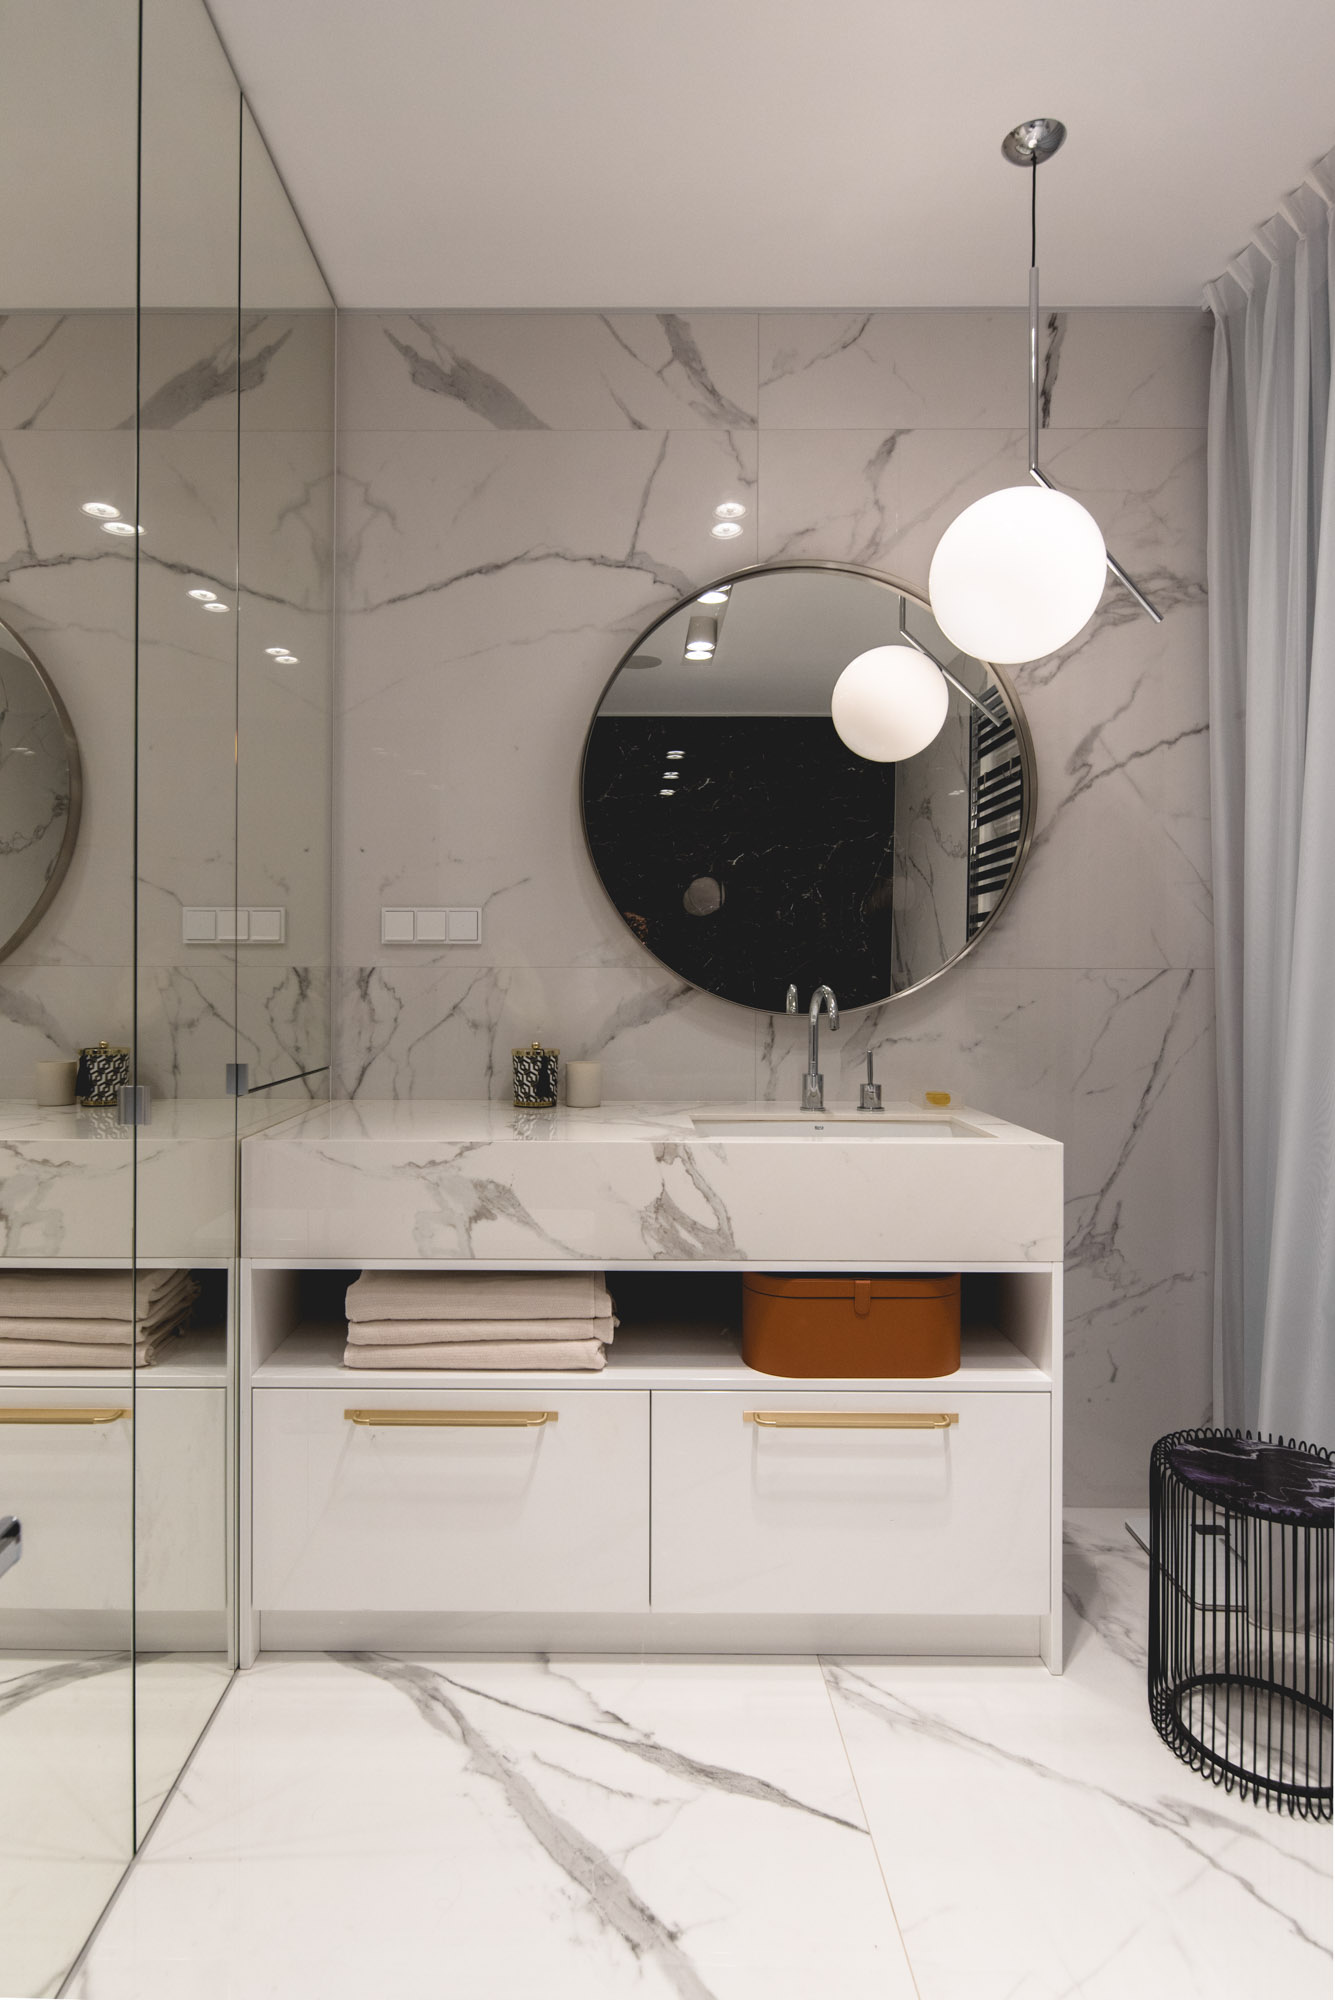 В этой современной ванной комнате стены и туалетный столик покрыты камнем, а круглое зеркало и подвесной светильник добавляют изогнутый элемент.